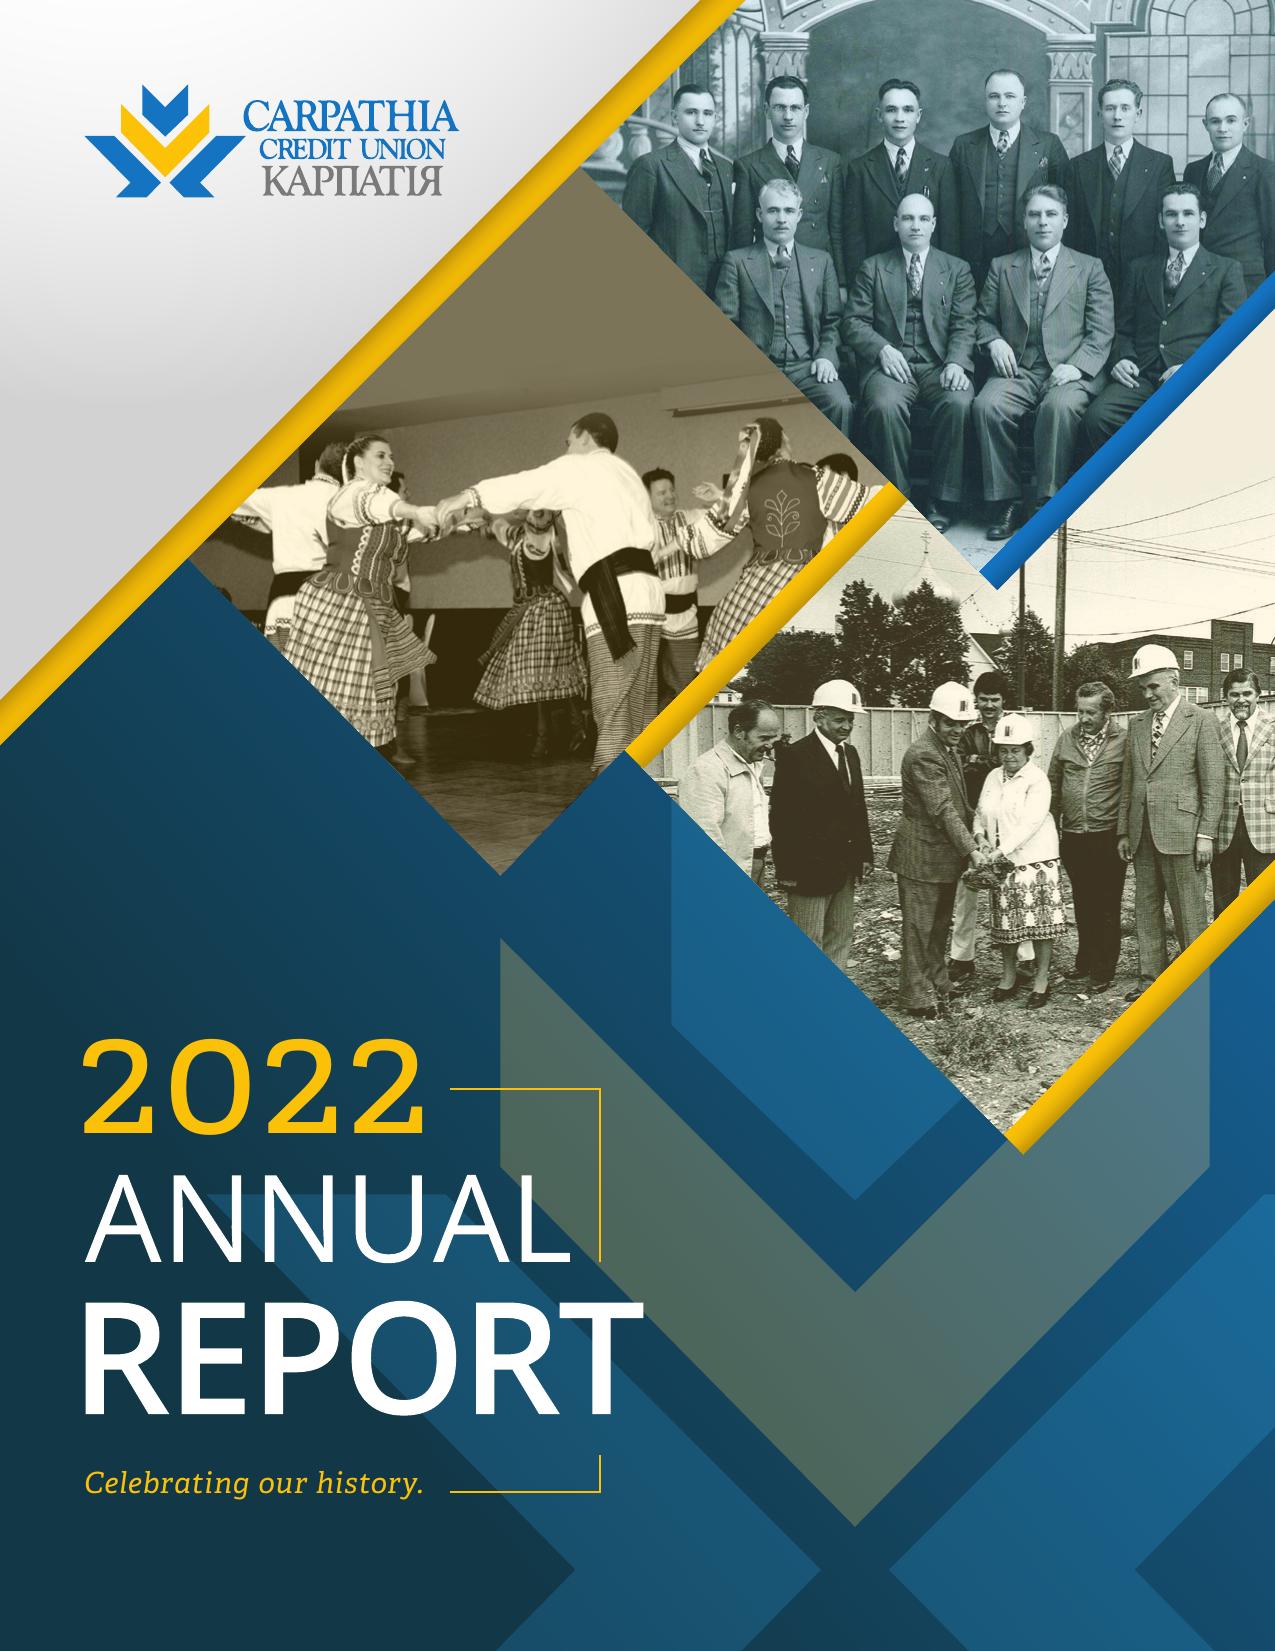 CARPATHIACU.MB 2022 Annual Report